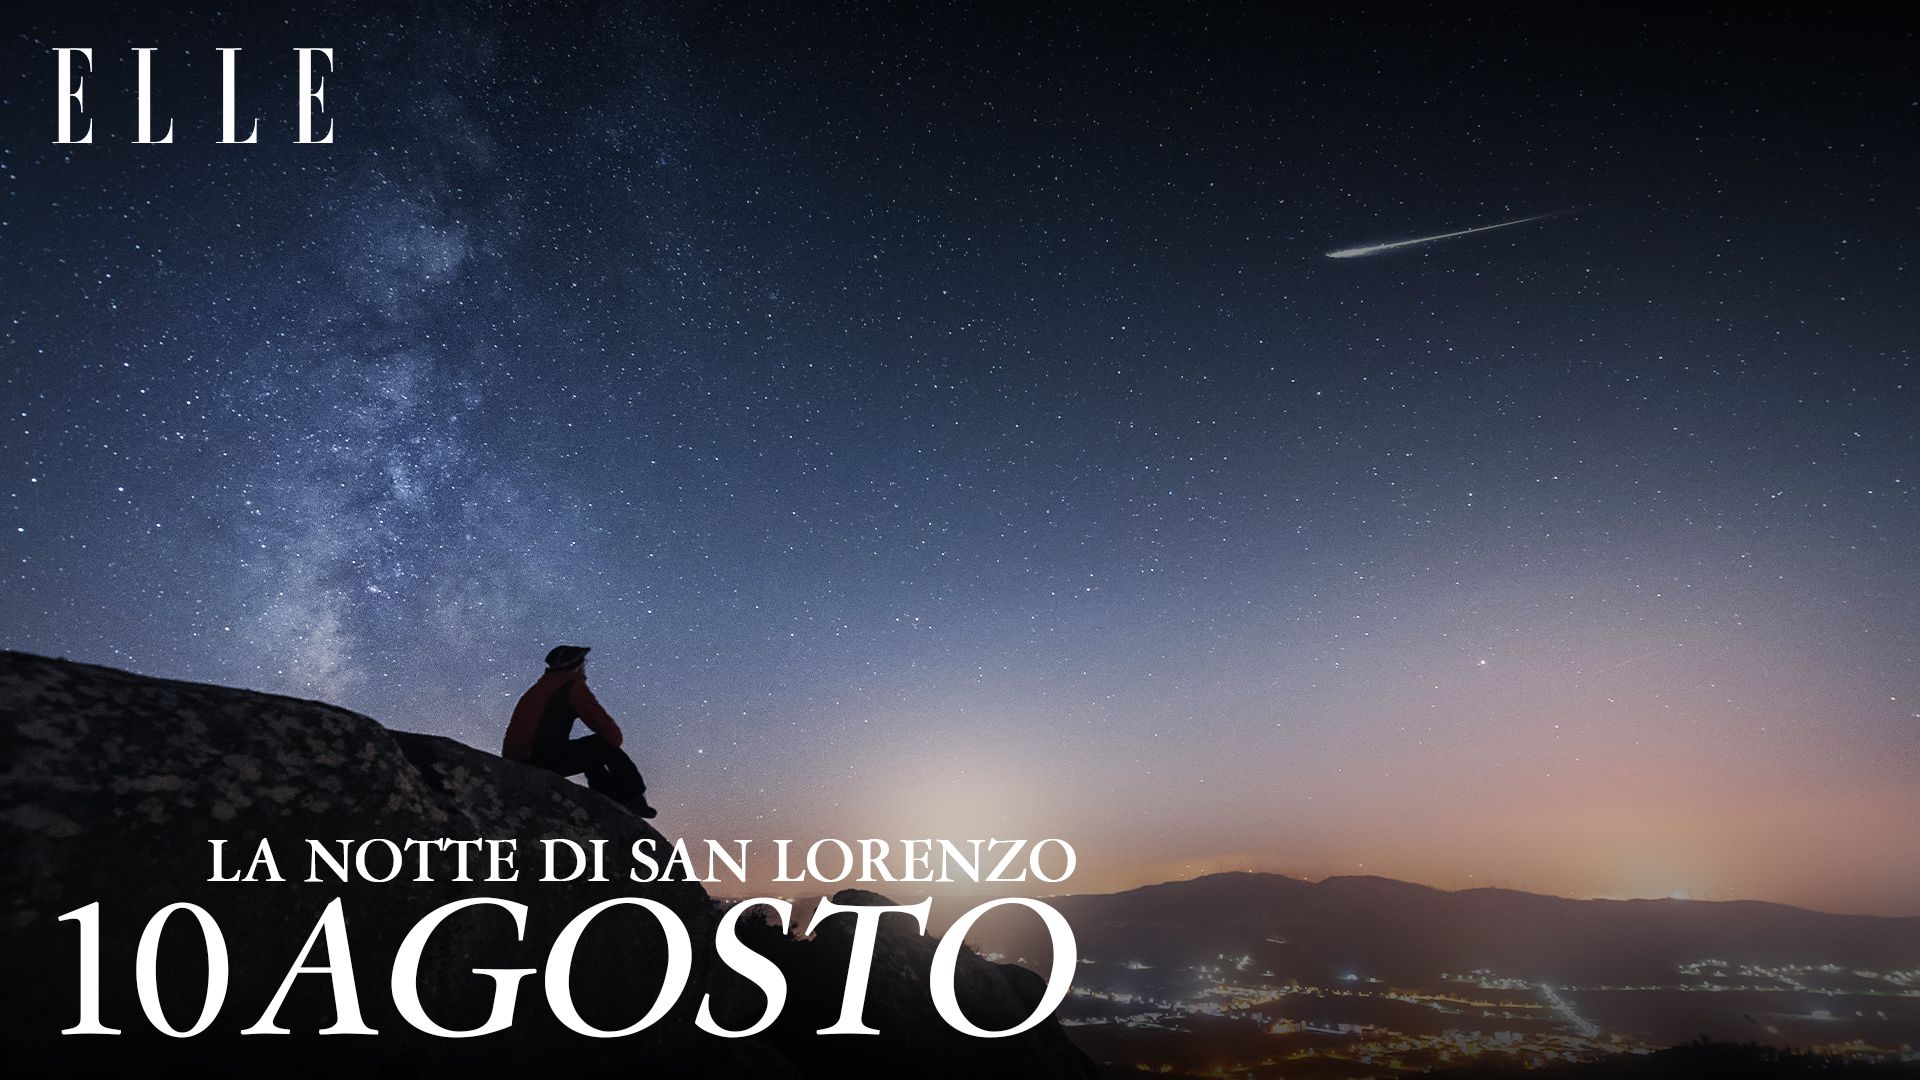 Notte di San Lorenzo: storia, data e perché si vedono le stelle cadenti